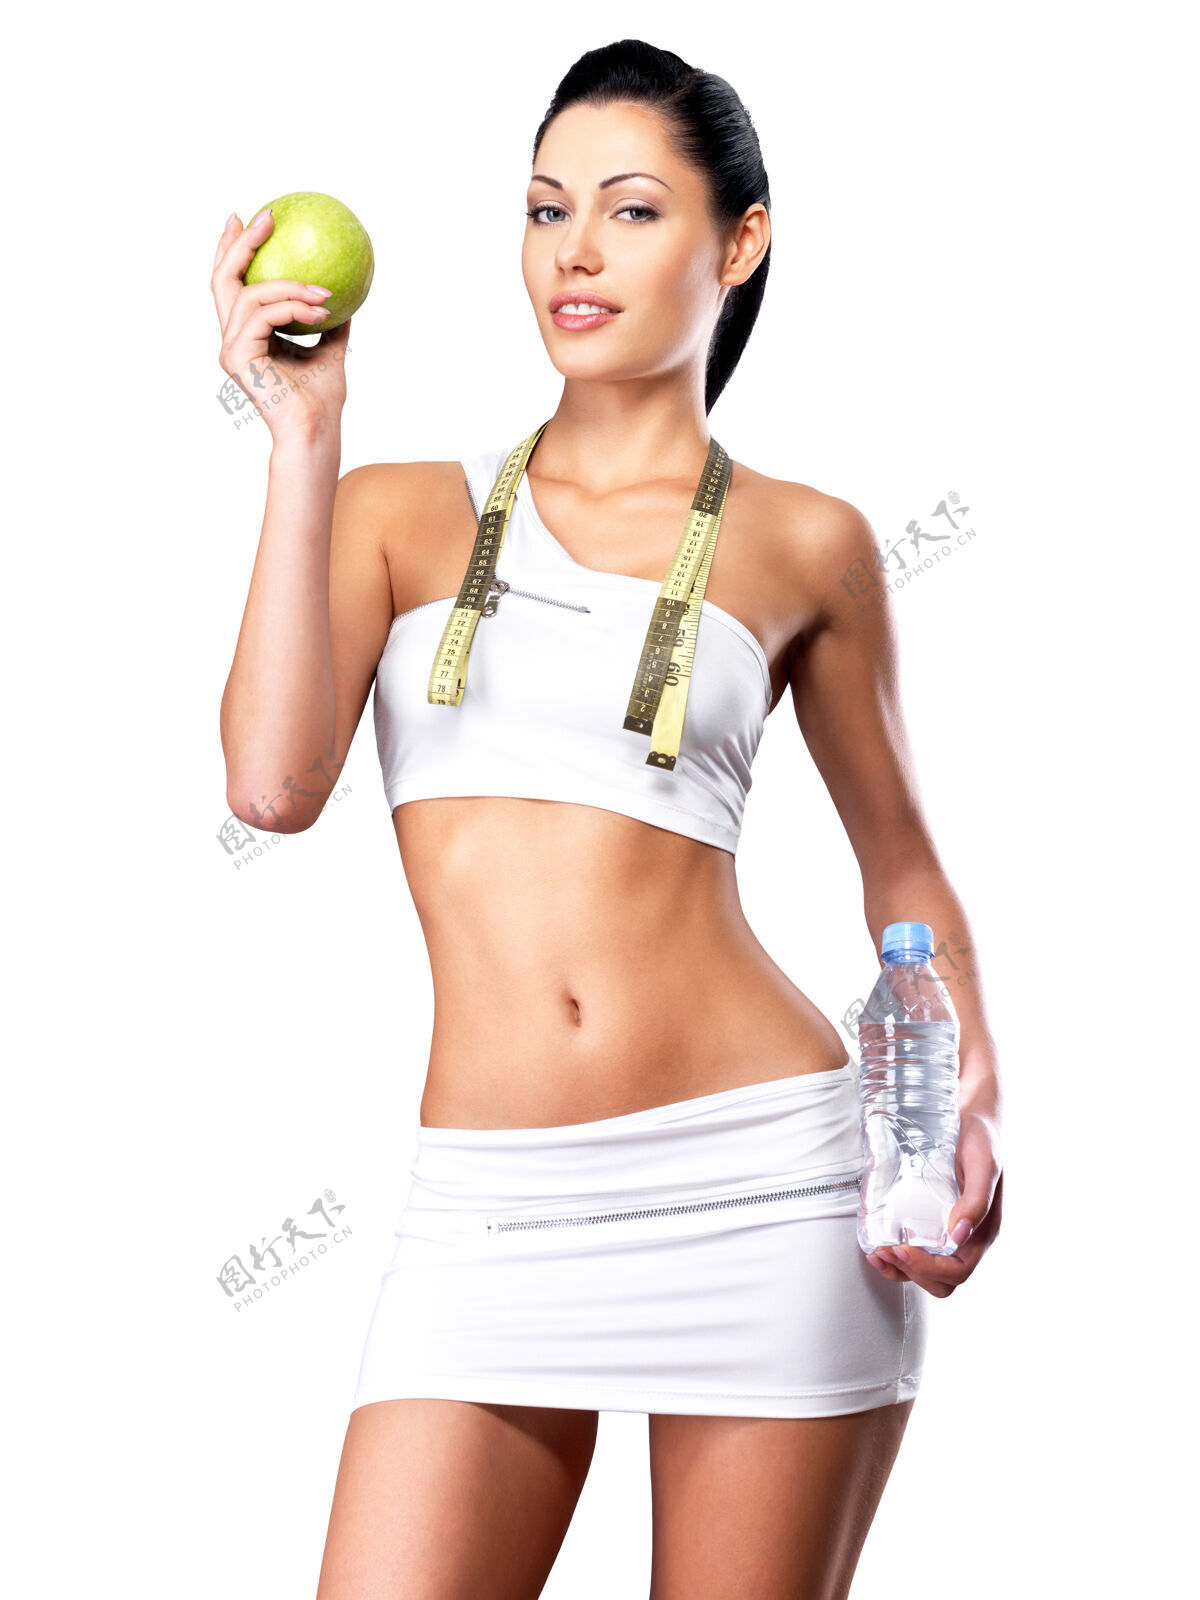 保持减肥后身材苗条的女性的健康生活方式身材完美的运动型女性运动员身体女孩